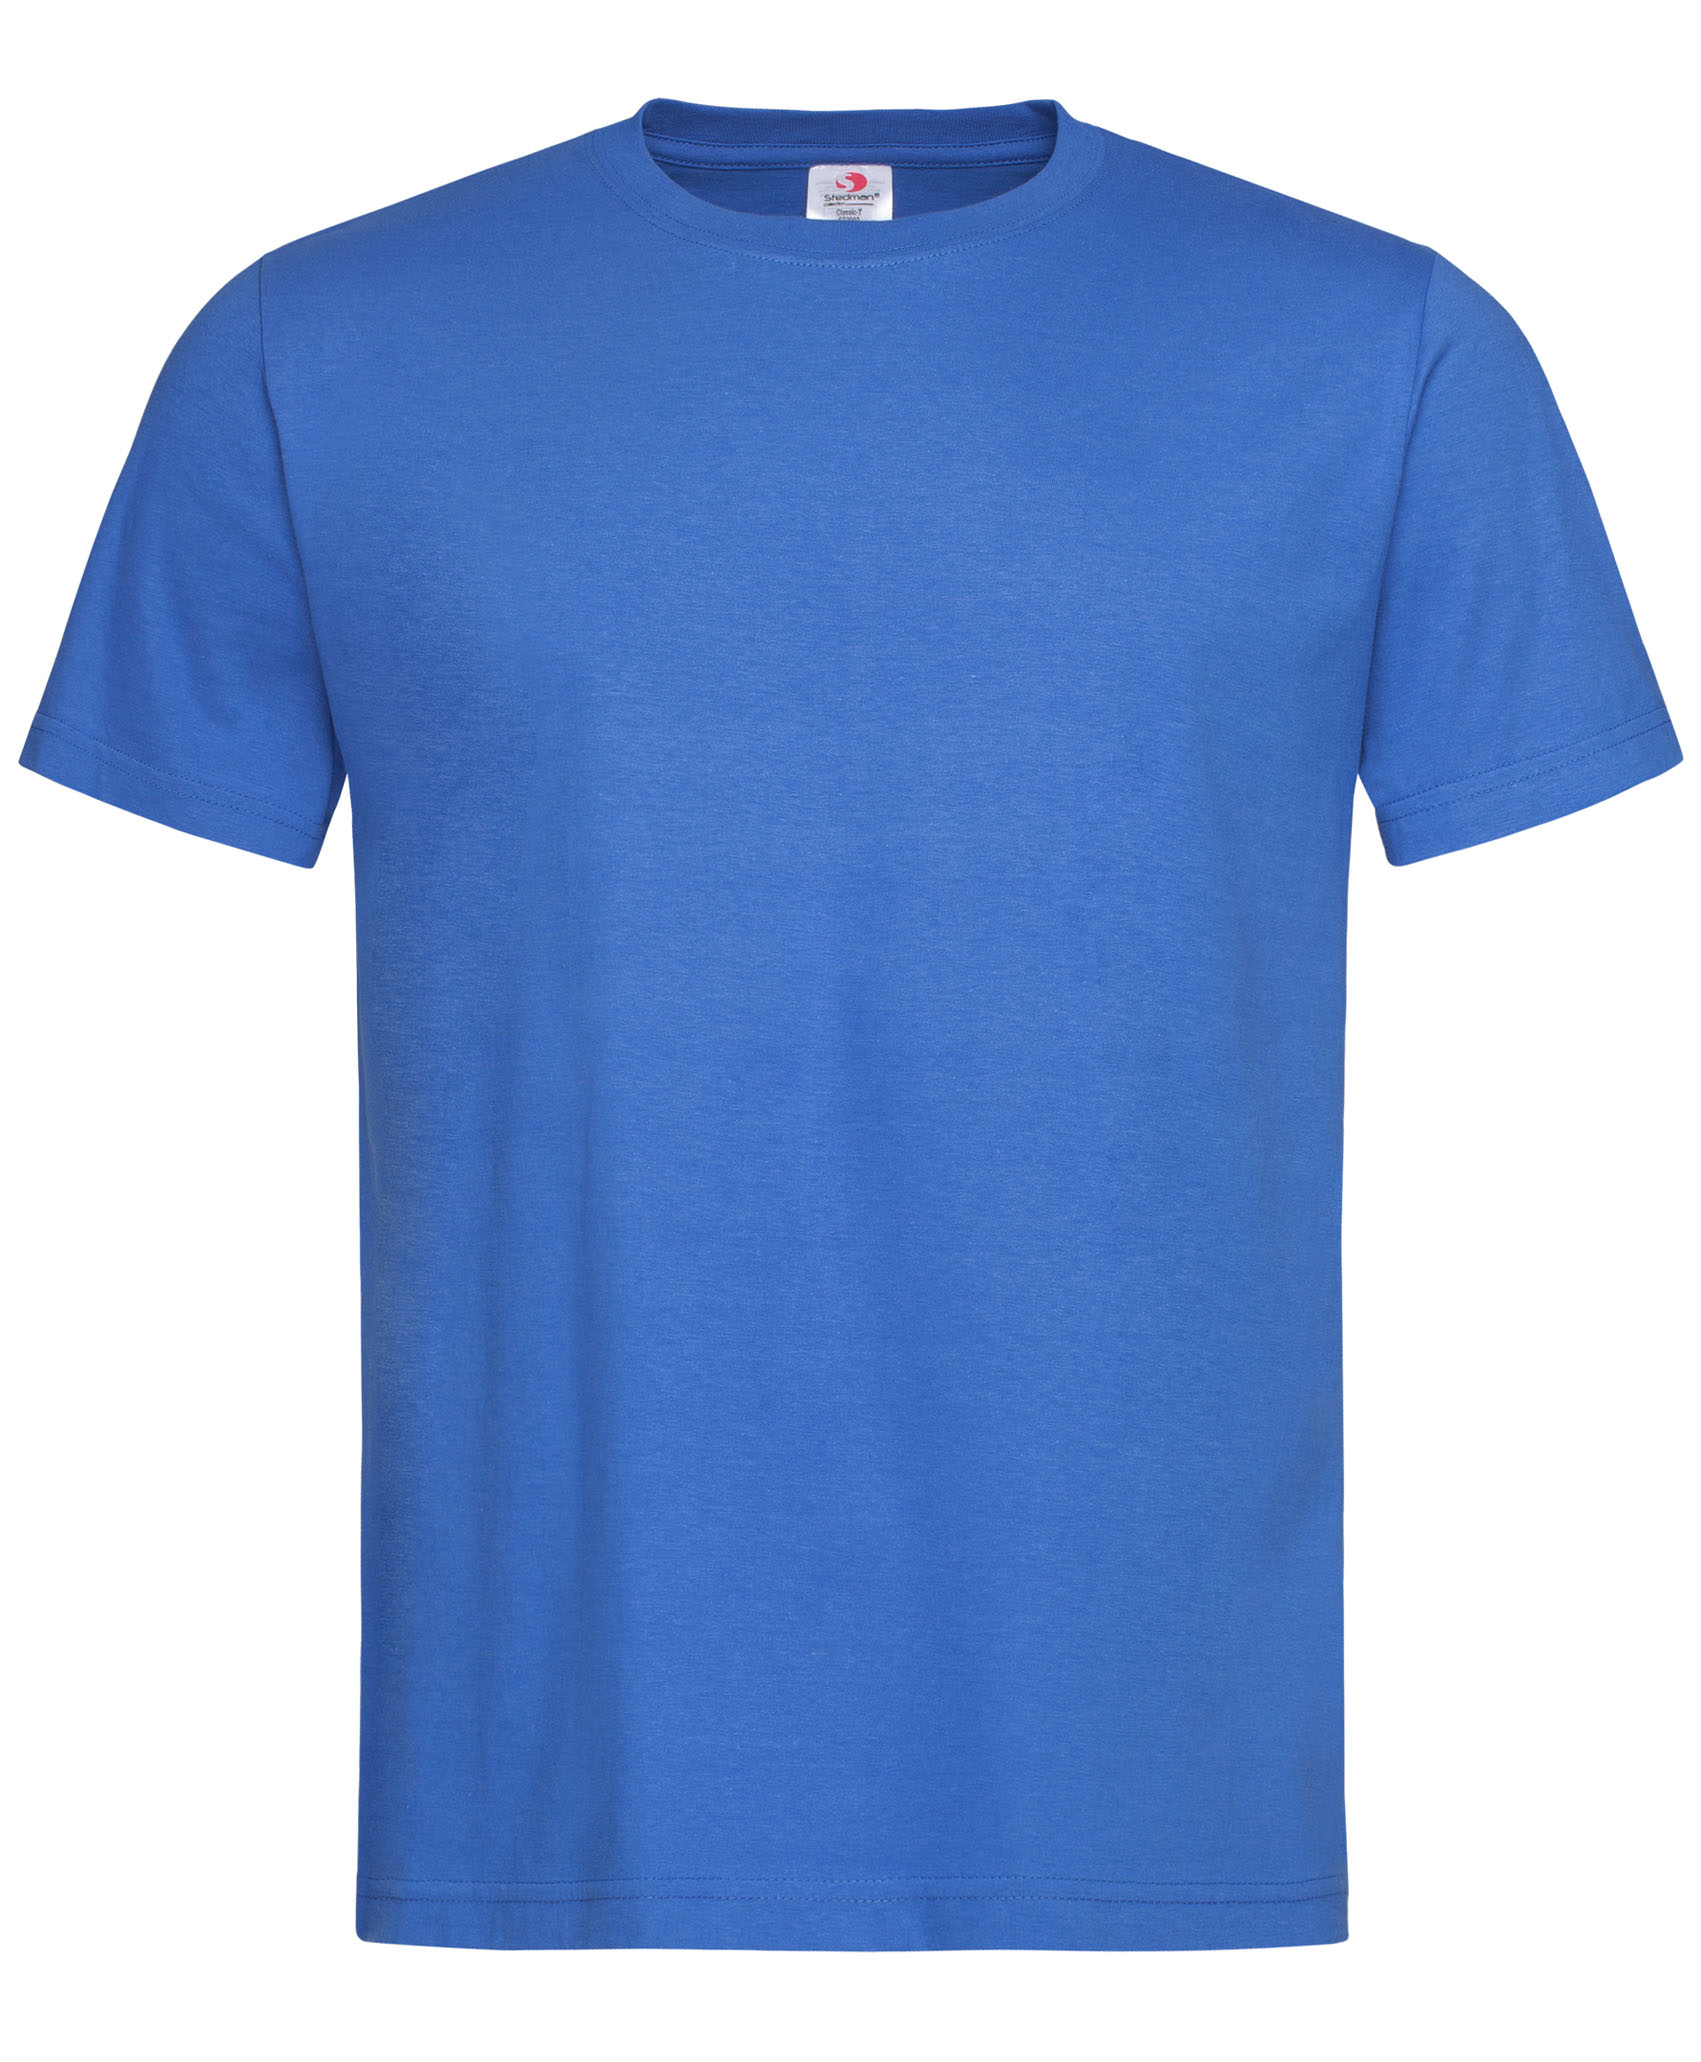 leicht blau Freizeit-& Sporthose GUYANA von LEGEA XS-M Abverkauf 